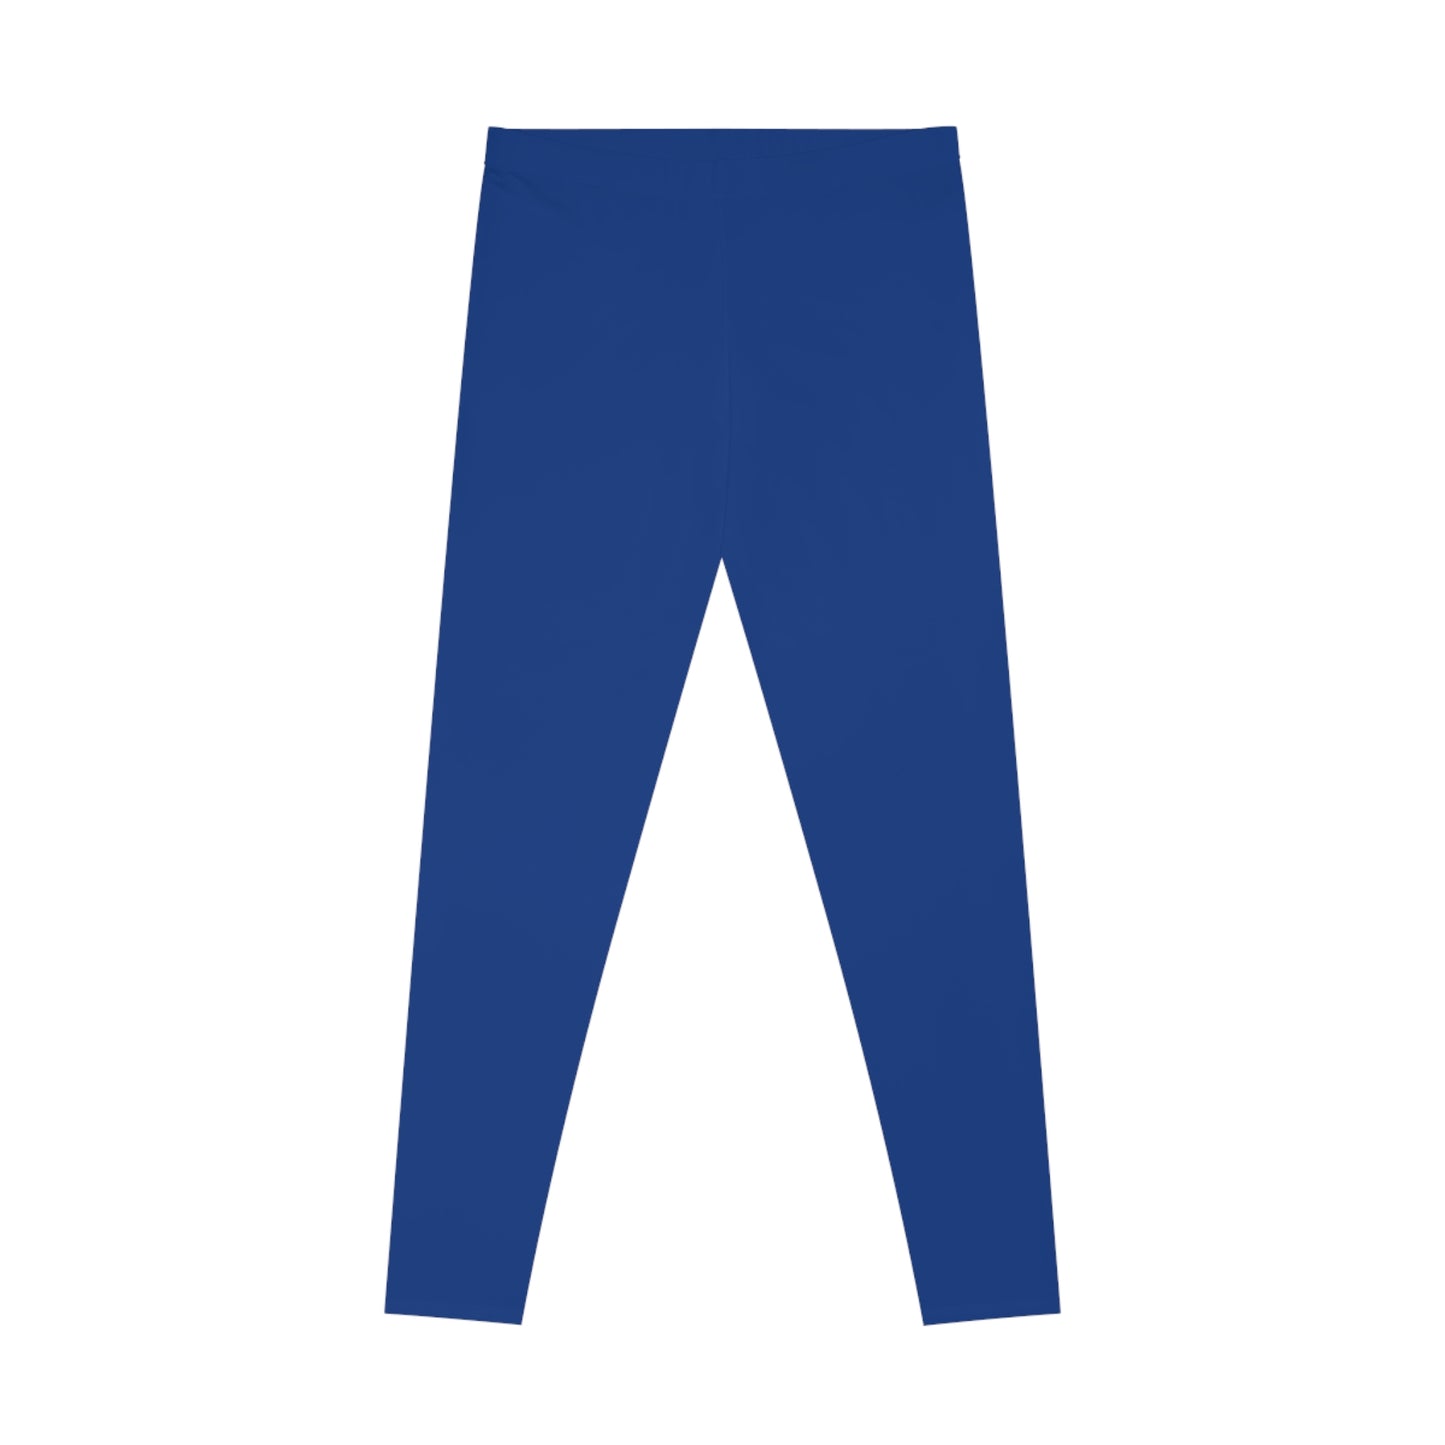 AlphaChic Leggings - Dark Blue (Back Logo)